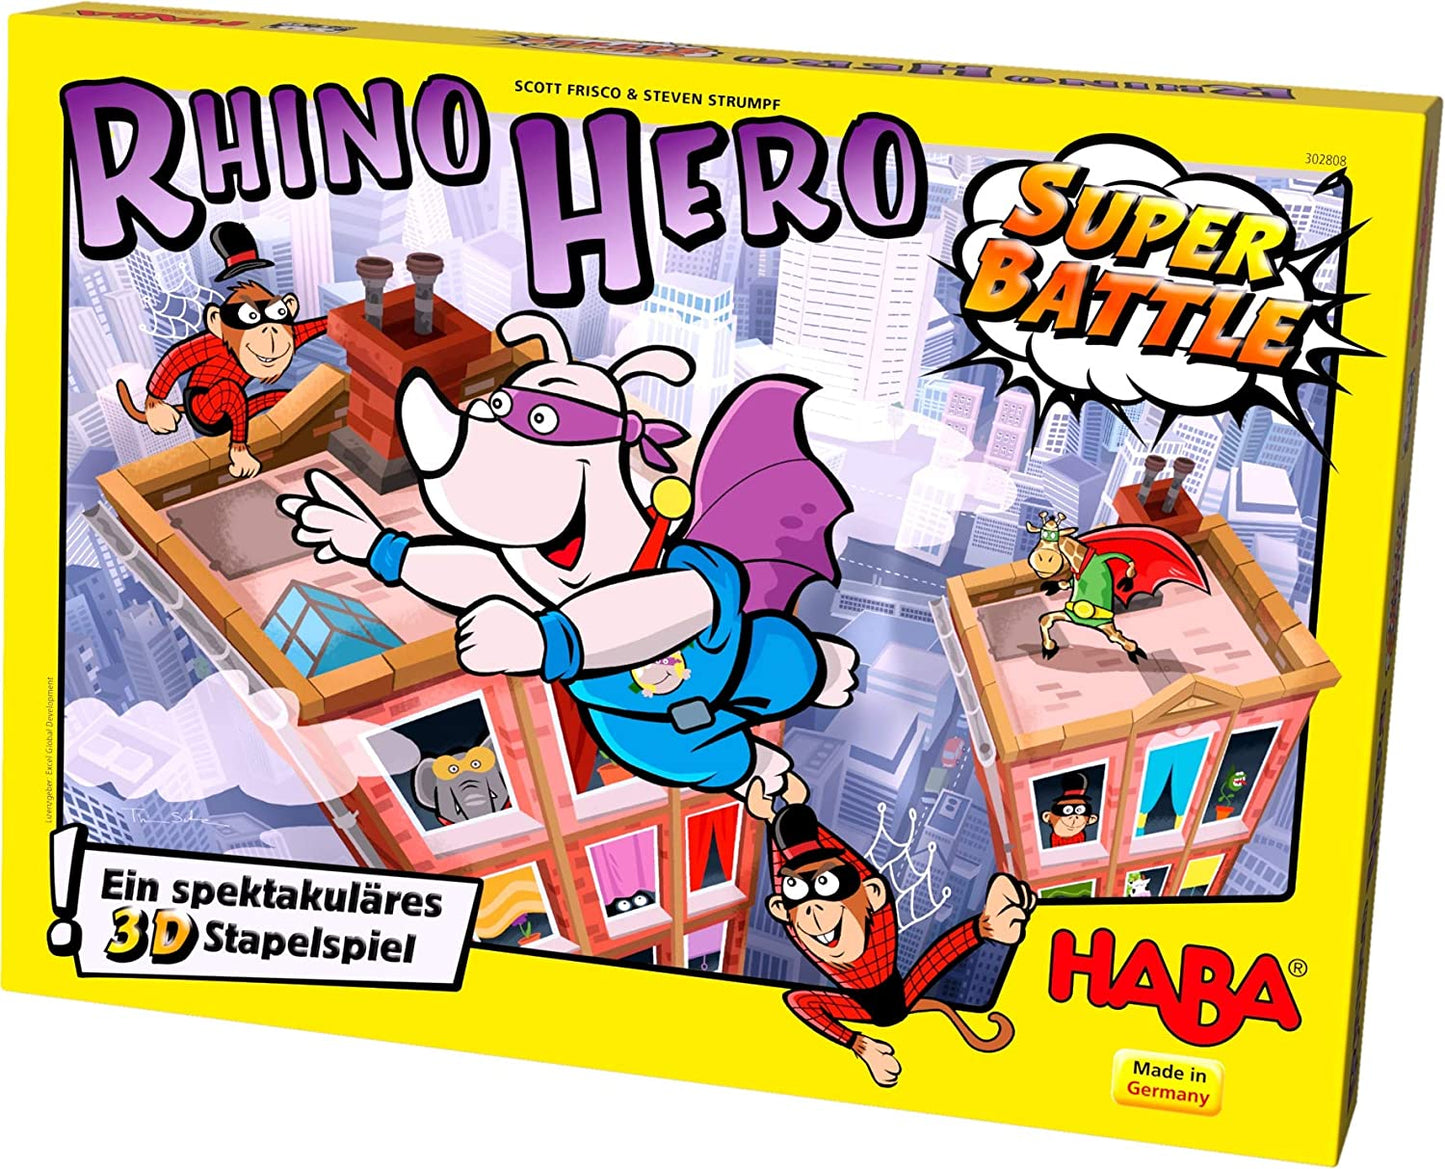 RHINO HERO SUPER BATTLE